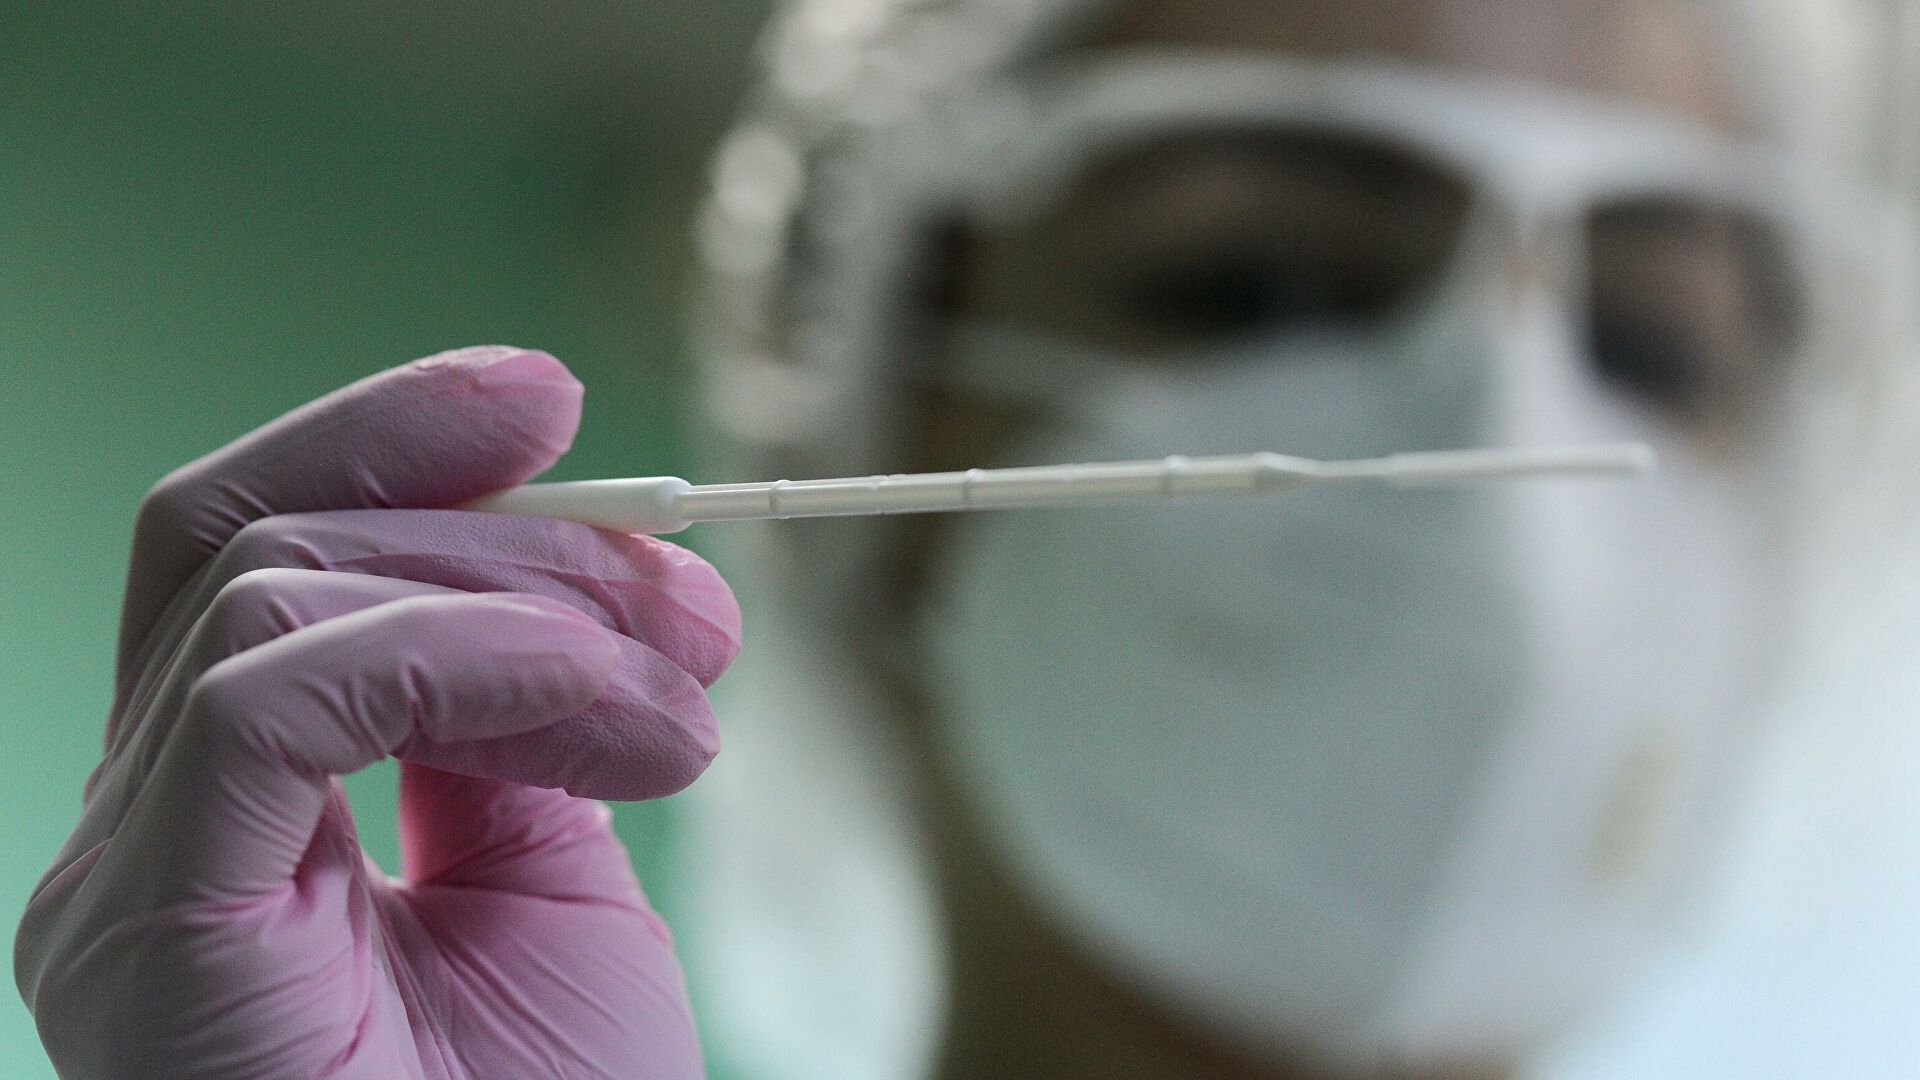 Вчера у 31 транскарпата был диагностирован коронавирус. Об этом сообщает департамент здравоохранения Закарпатской областной государственной администрации.